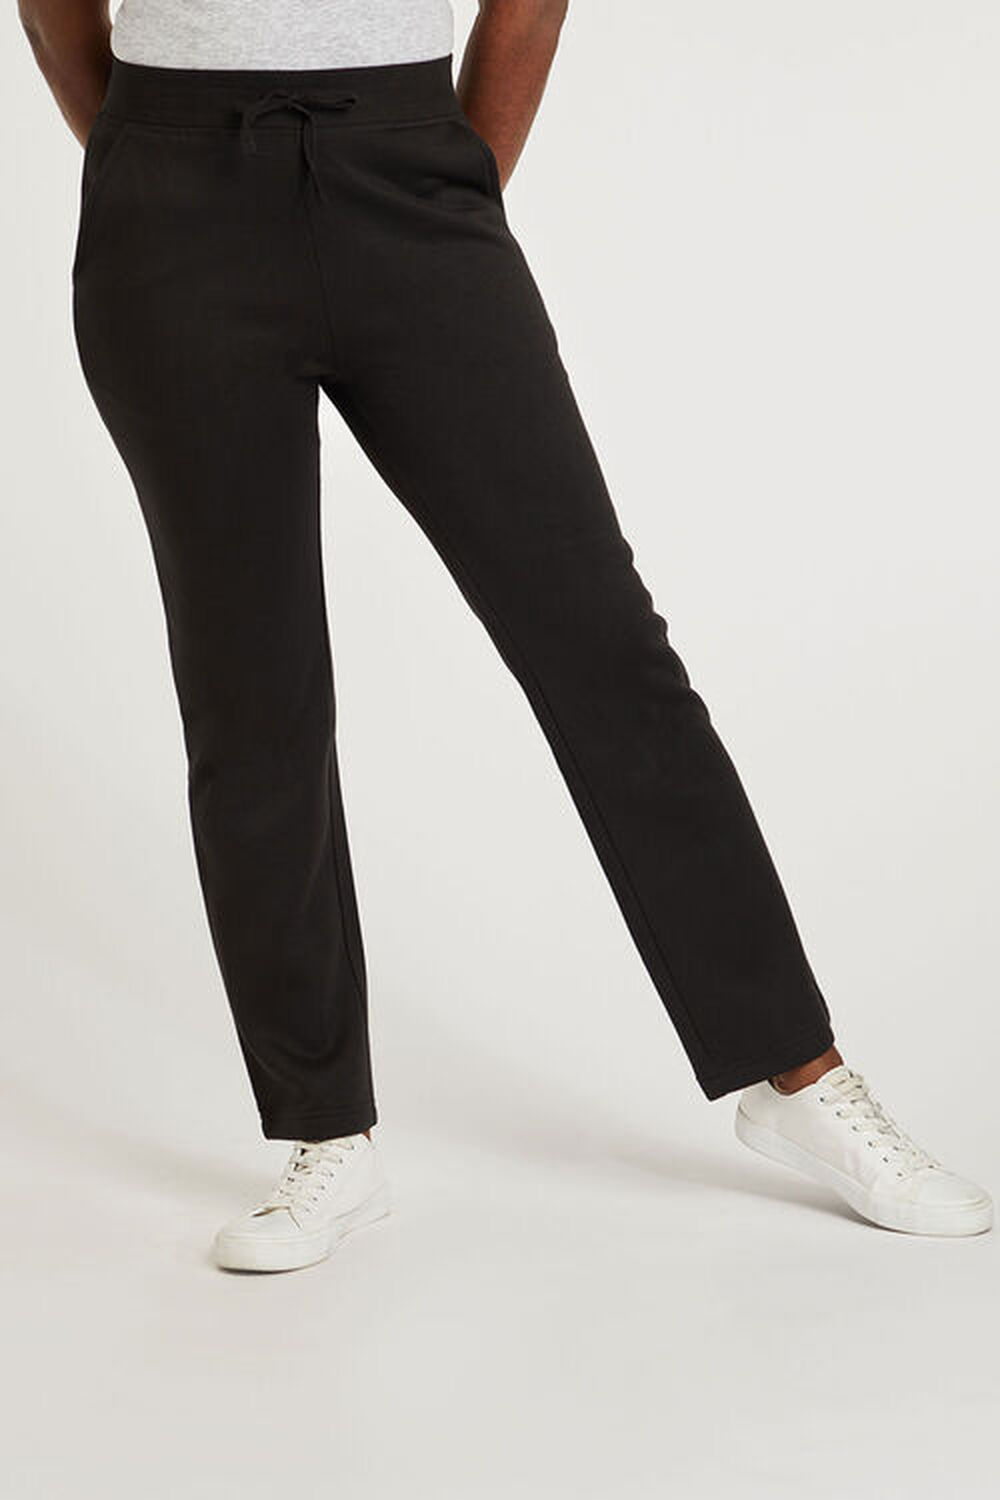 Bonmarche Black Jogging Pants, Size: 20